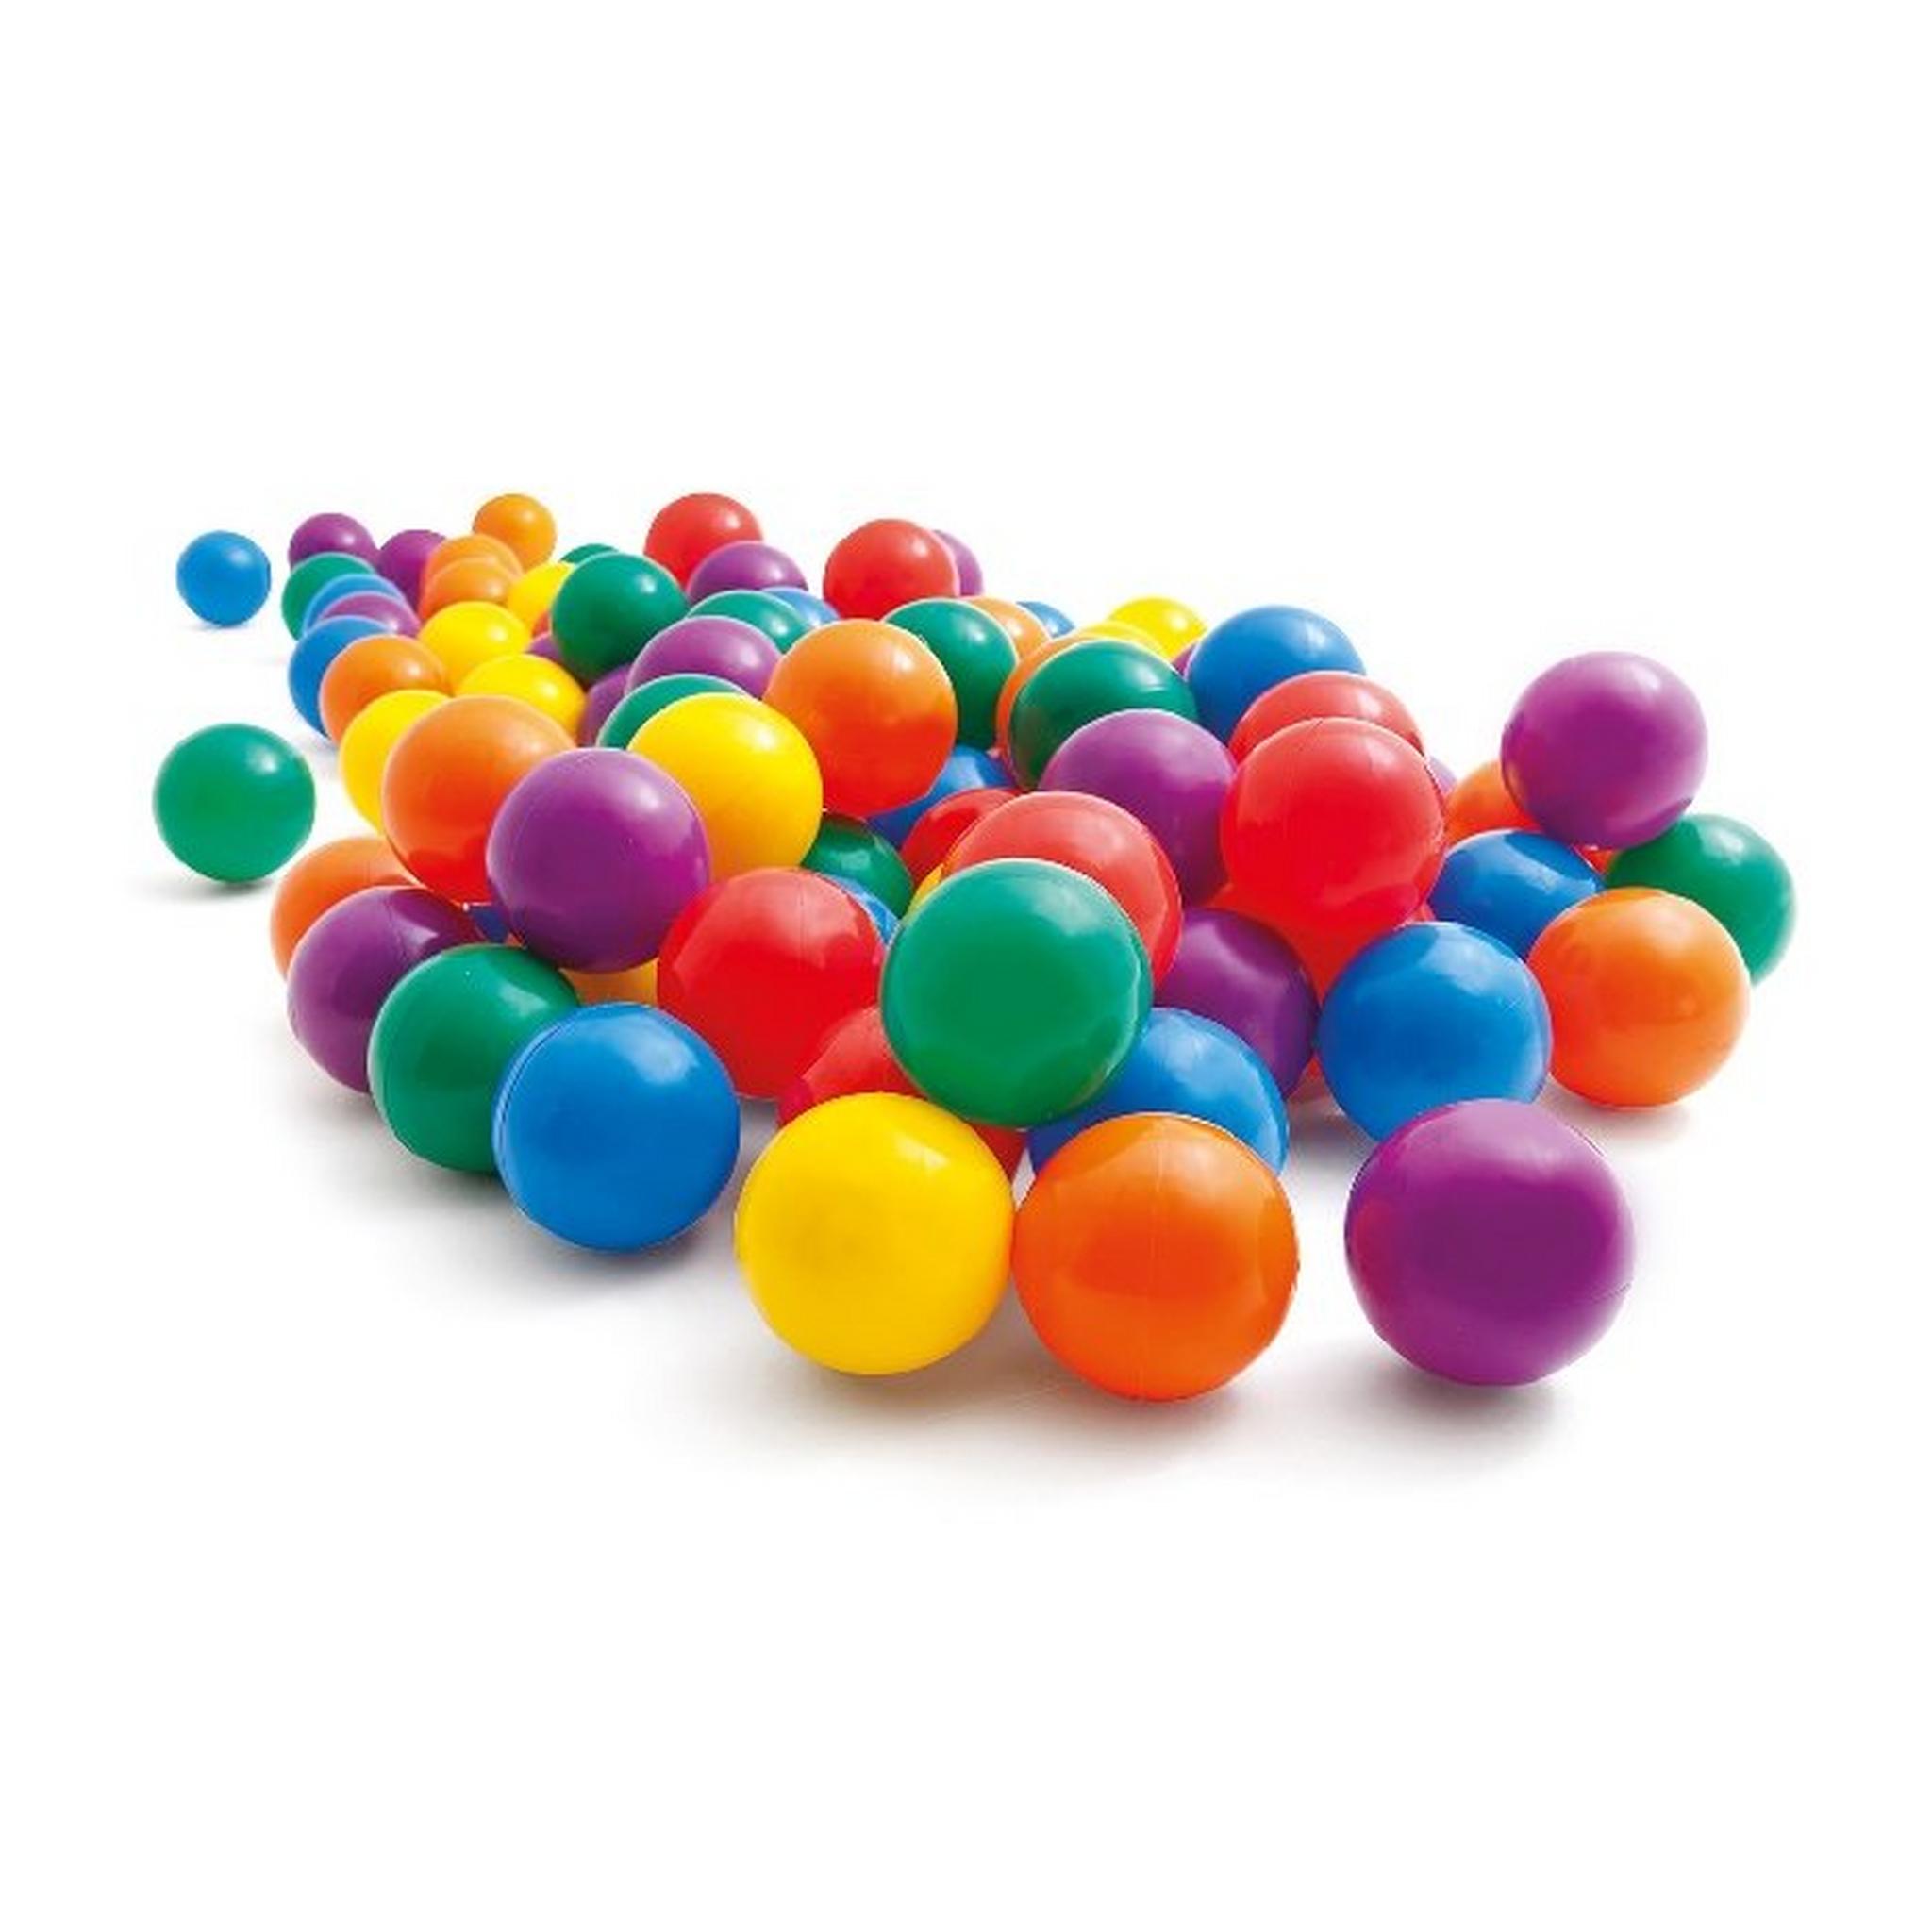 Intex Fun Ballz - Multicolor